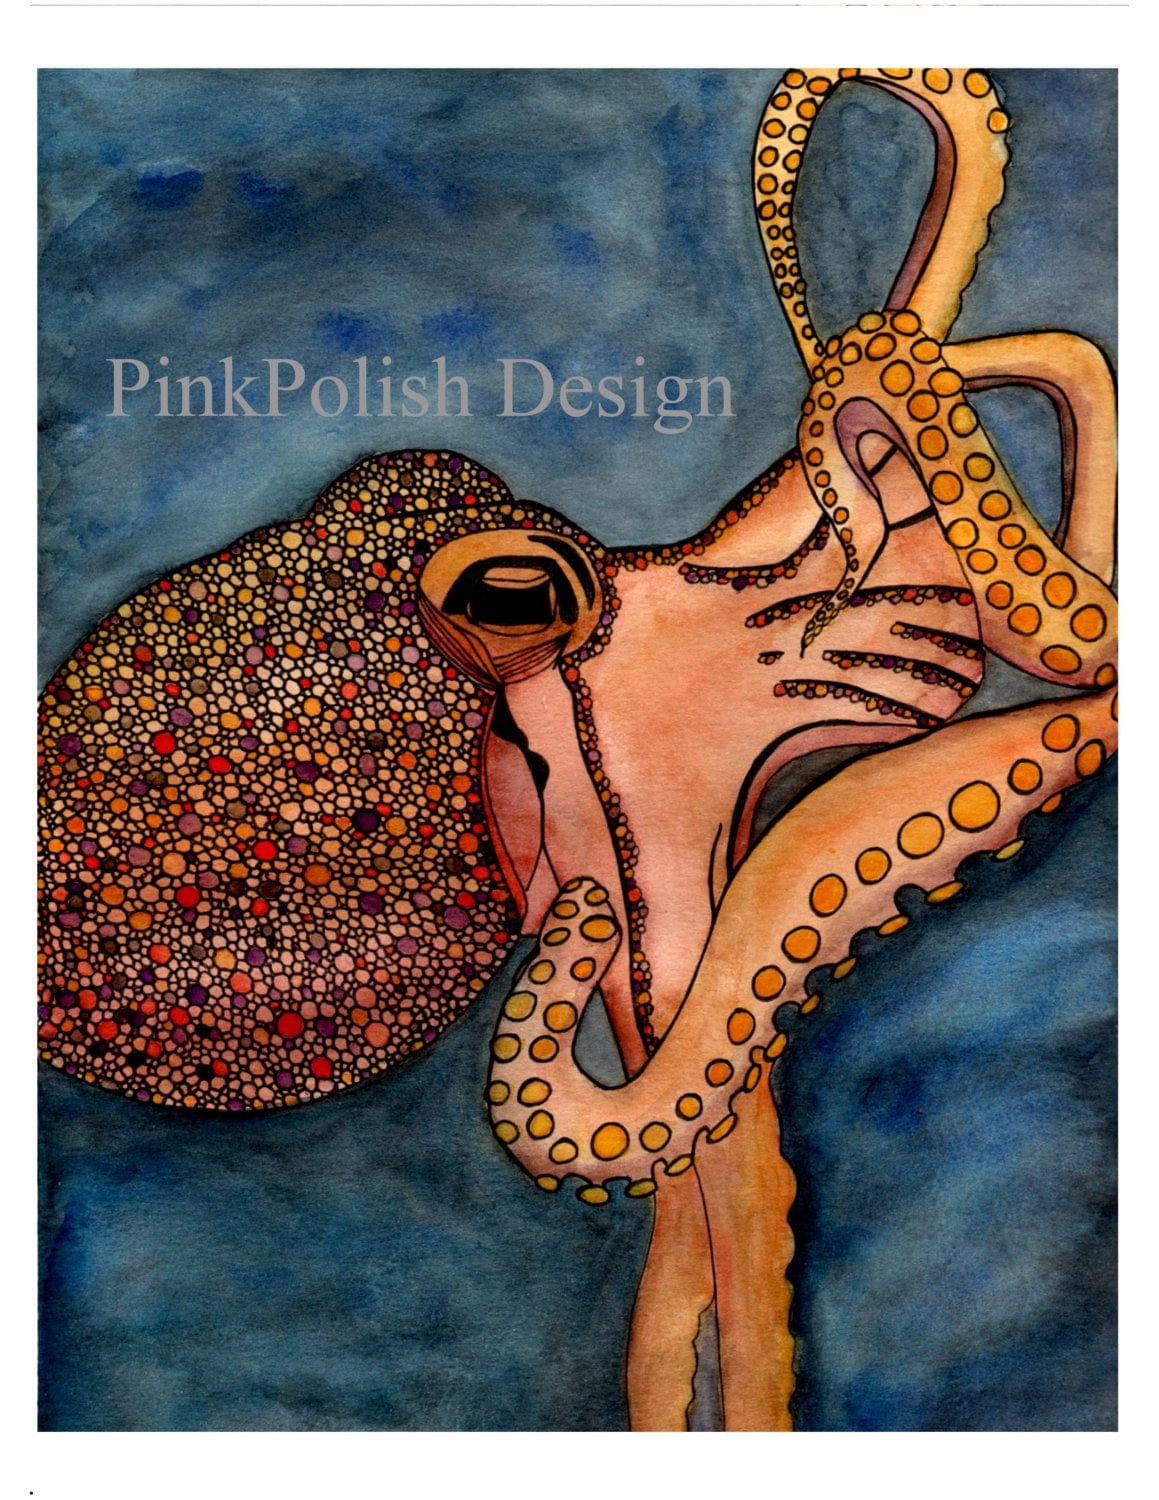 PinkPolish Design Art Prints "Tentacles"  Watercolor Painting: Art Print